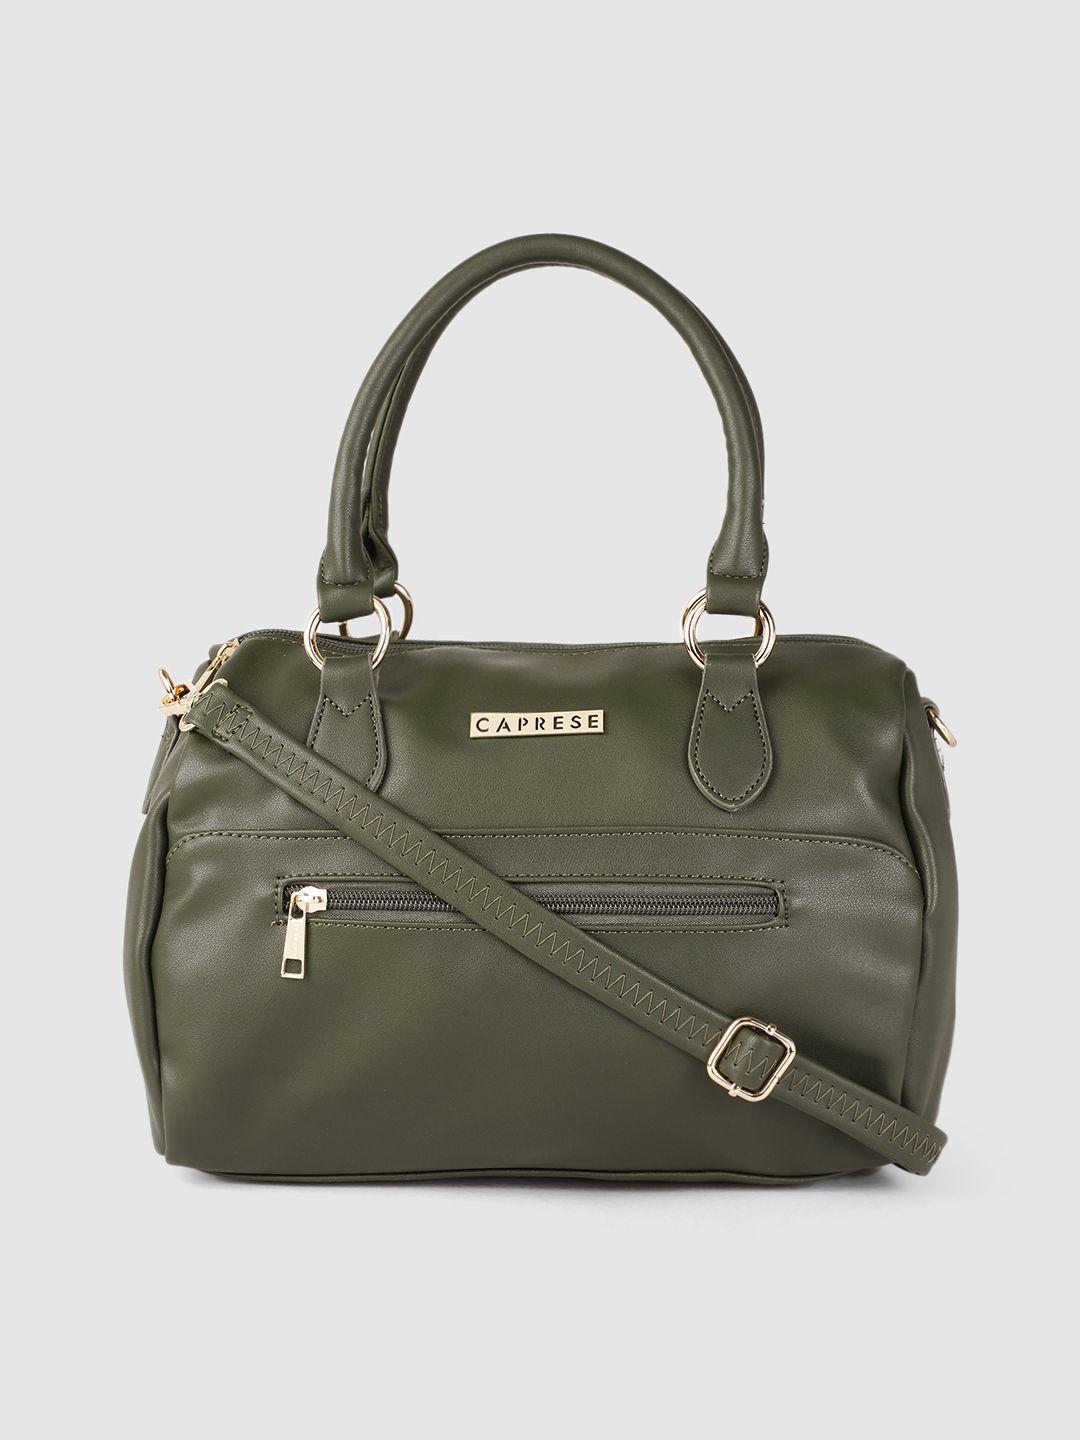 caprese olive green structured handheld bag